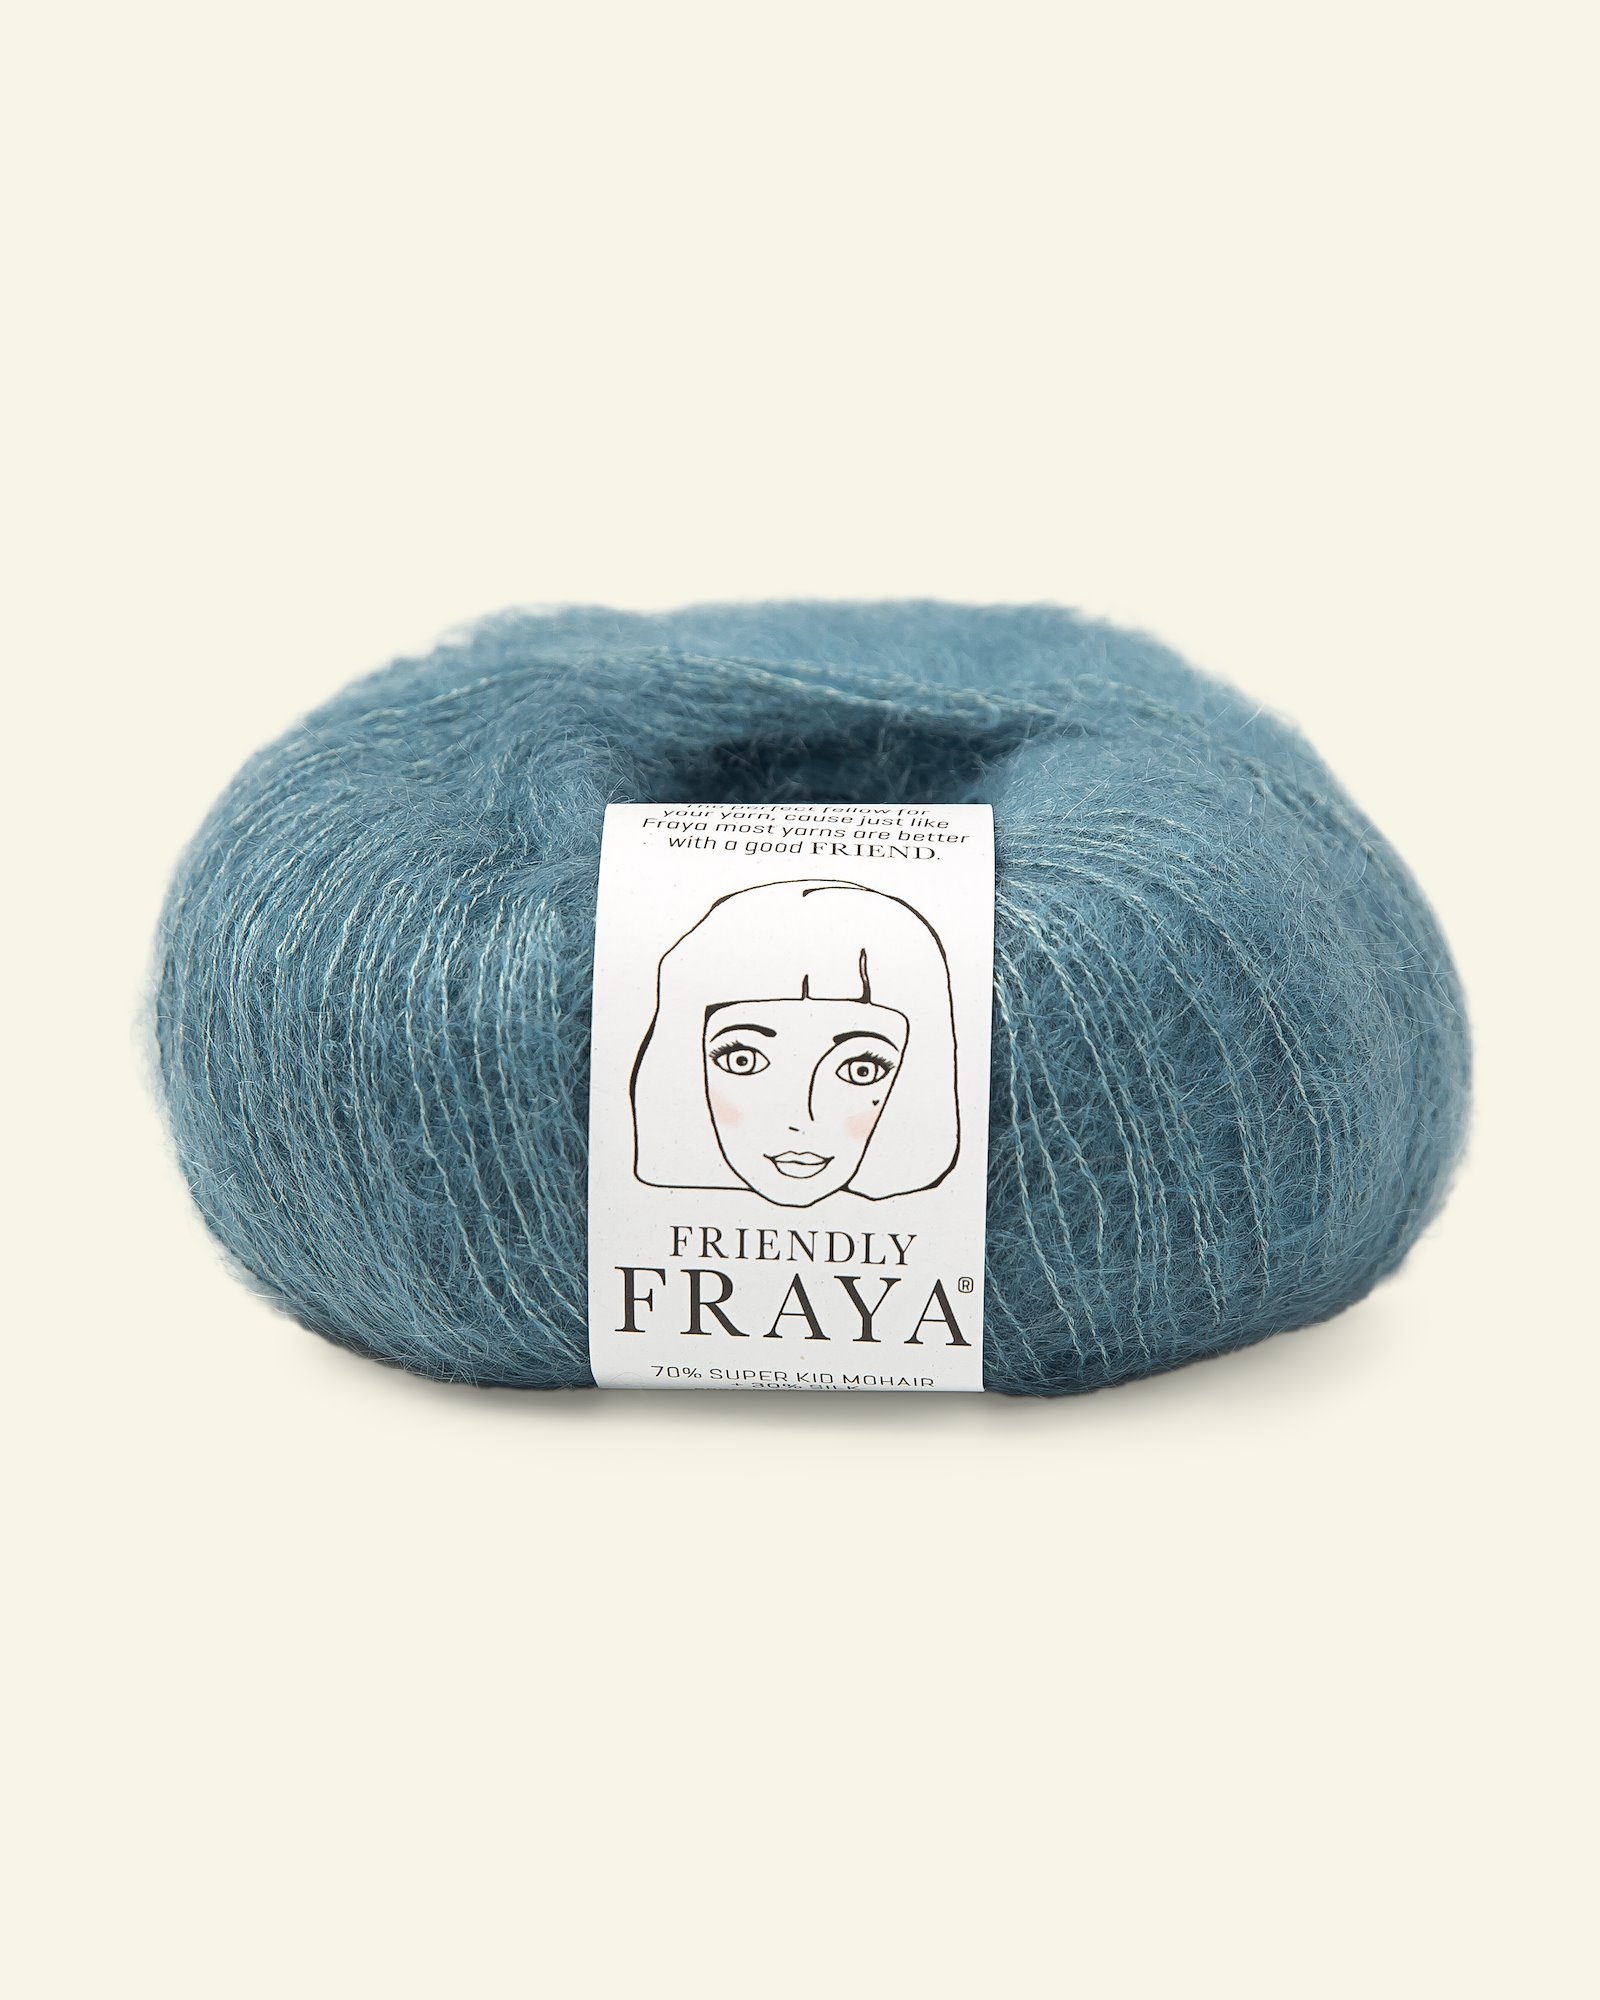 FRAYA, silk mohair yarn "Friendly", dusty blue 90054997_pack